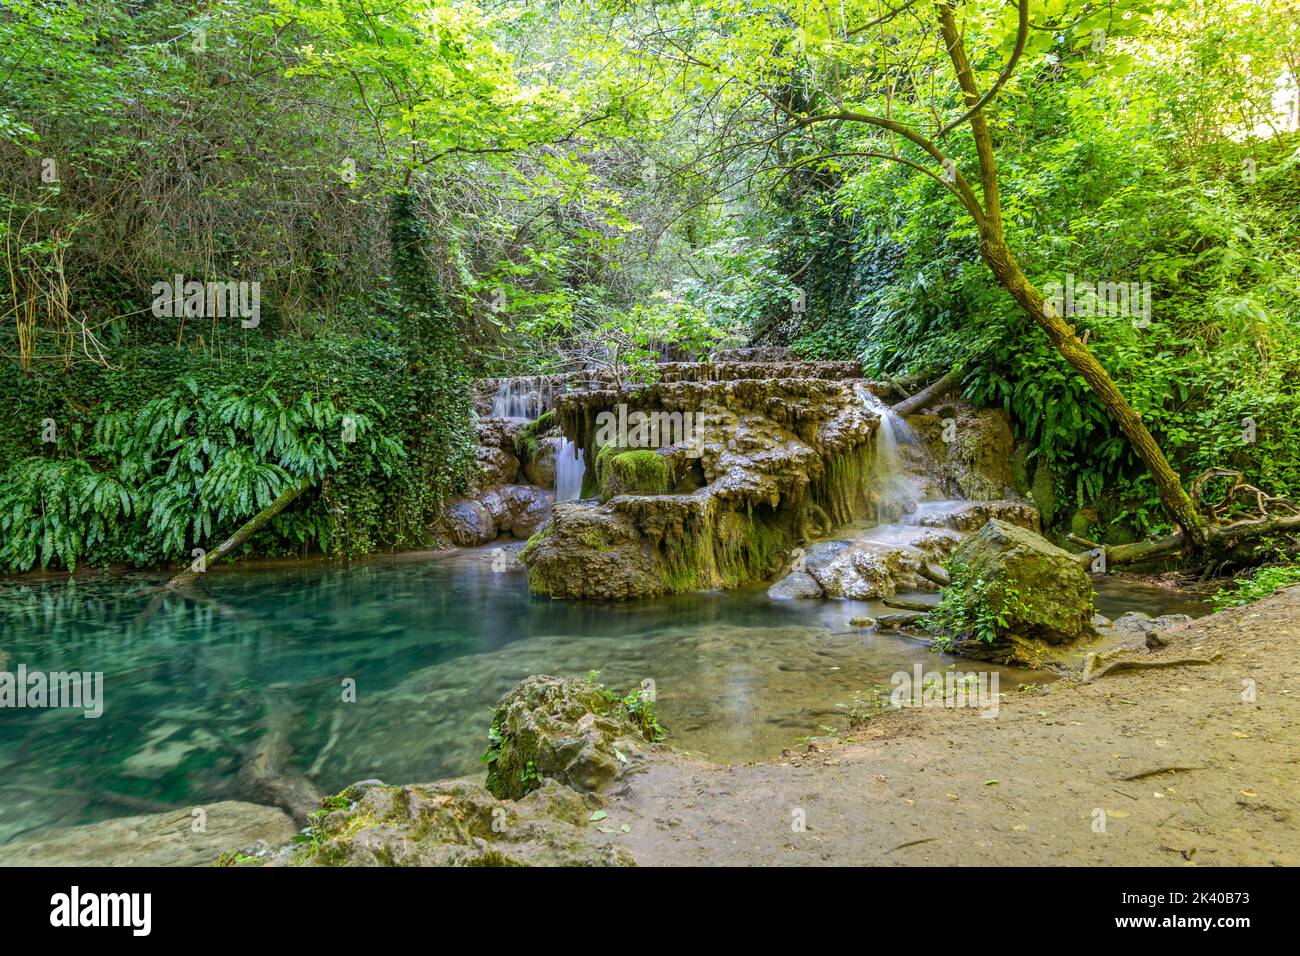 Les incroyables cascades de Krushunski avec des eaux turquoises et de la mousse verte. Situé près de la ville de Lovech en Bulgarie Banque D'Images